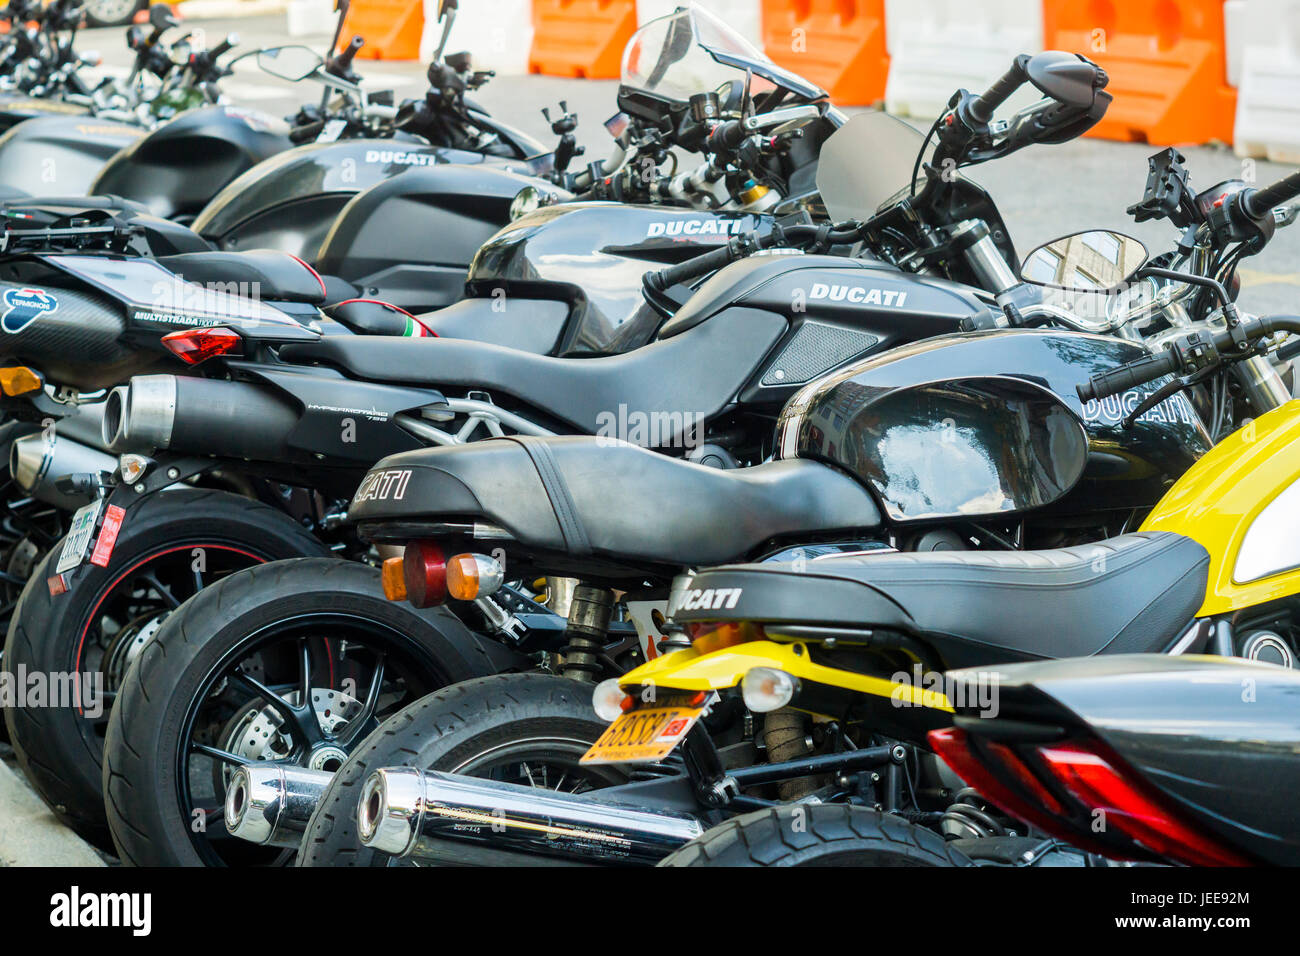 Ducati Motorräder und anderen Marken werden vor dem Ducati-Händler im Stadtteil Soho von New York auf Mittwoch, 21. Juni 2017 aufgereiht. Harley-Davidson wird berichtet, dass ein Gebot für Ducati Motorräder im Rahmen eines Angebots Wert $ 1,67 Milliarden vorbereitet werden. Volkswagen verkauft ihre Marke Ducati und Bajaj Auto, eine indische Motorradhersteller und mehrere Buyout-Unternehmen interessieren sich auch für die high-Performance-Bike-Unternehmen.  (© Richard B. Levine) Stockfoto